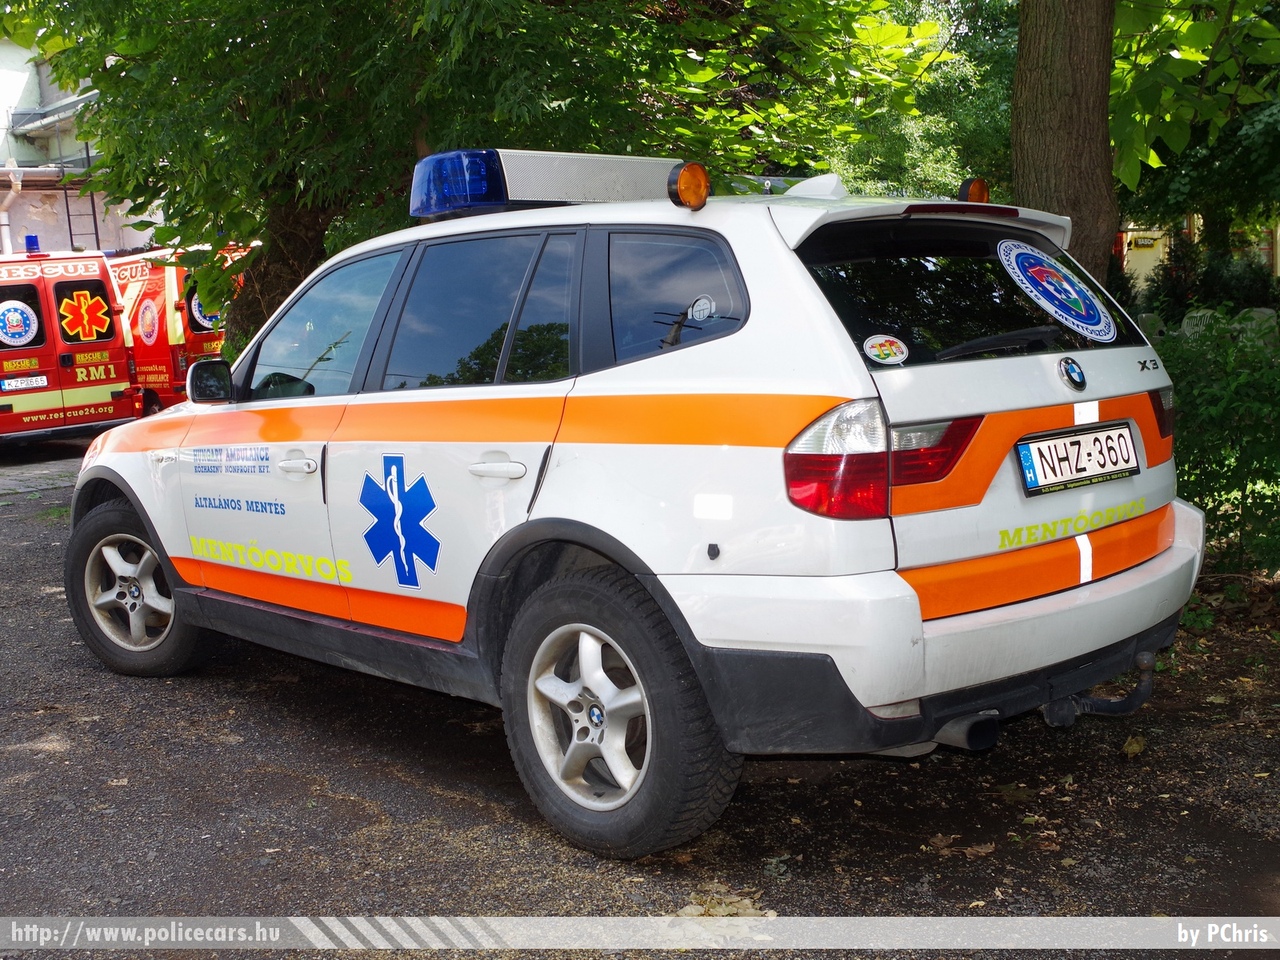 BMW X3, Hungary Ambulance Kft., fotó: PChris
Keywords: magyar Magyarország mentő mentőautó Hungary hungarian ambulance NHZ-360